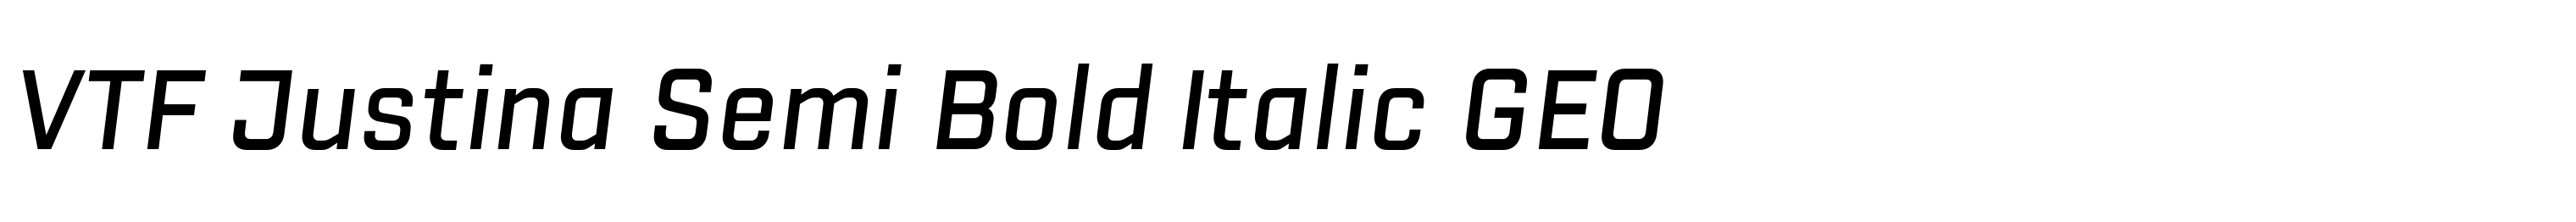 VTF Justina Semi Bold Italic GEO